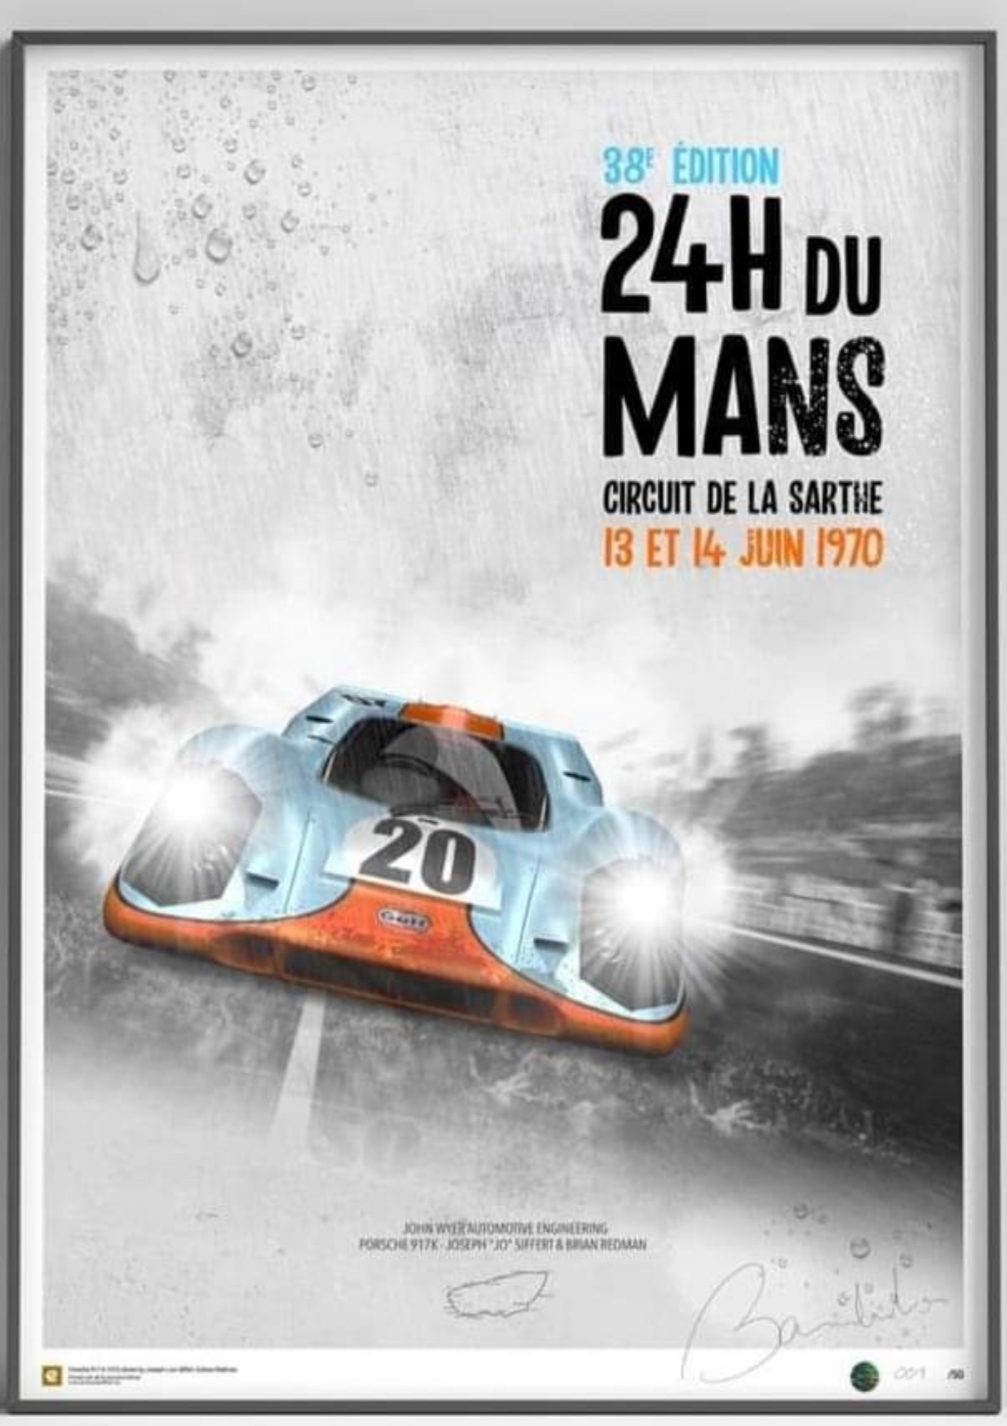 Affiches Porsche dans la course Automobile - Page 2 Img_2185